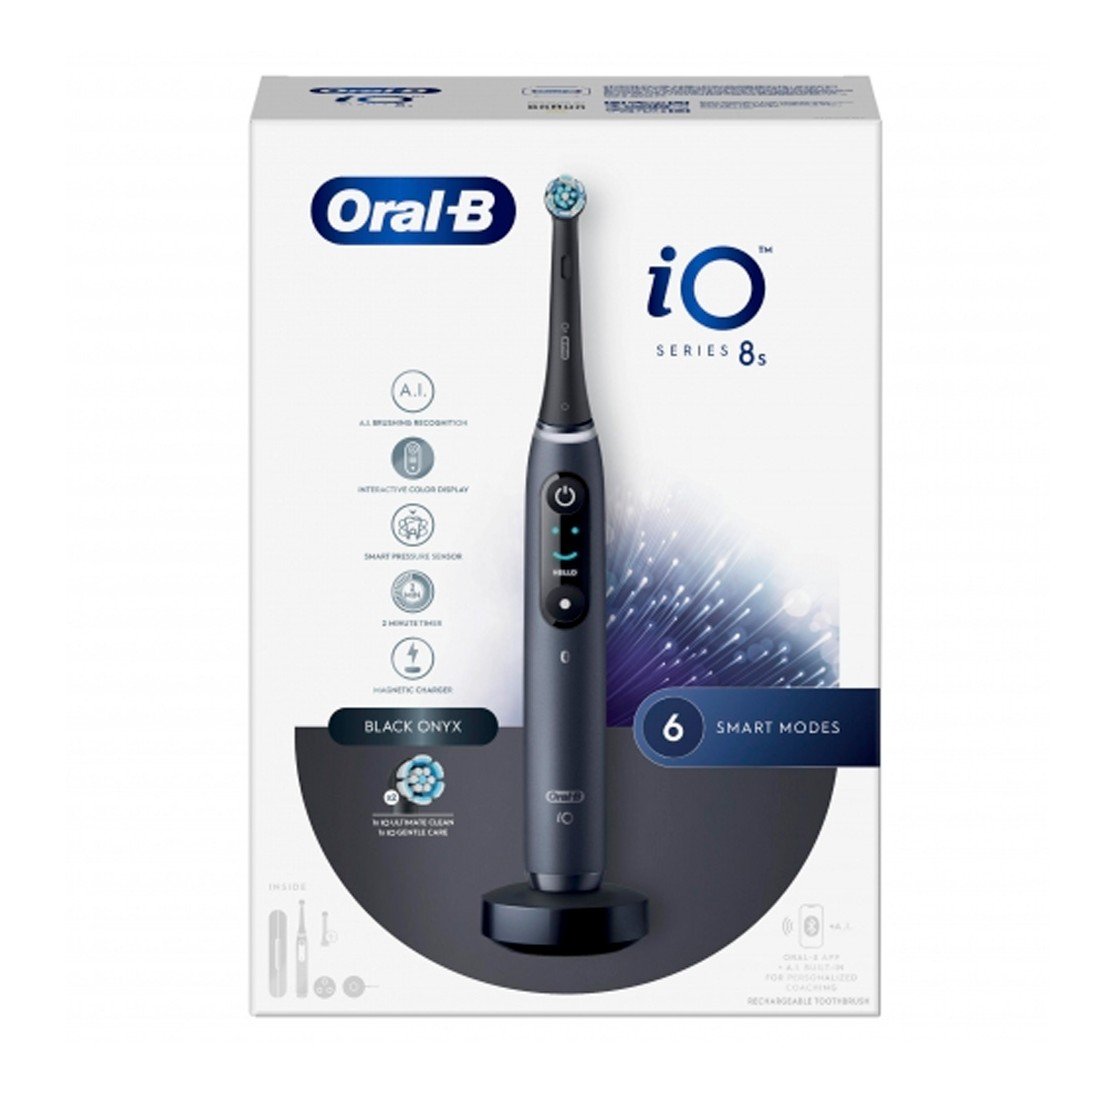 Comprar Recambio Oral-B Cepillo Eléctrico Io Gentle Care a precio online